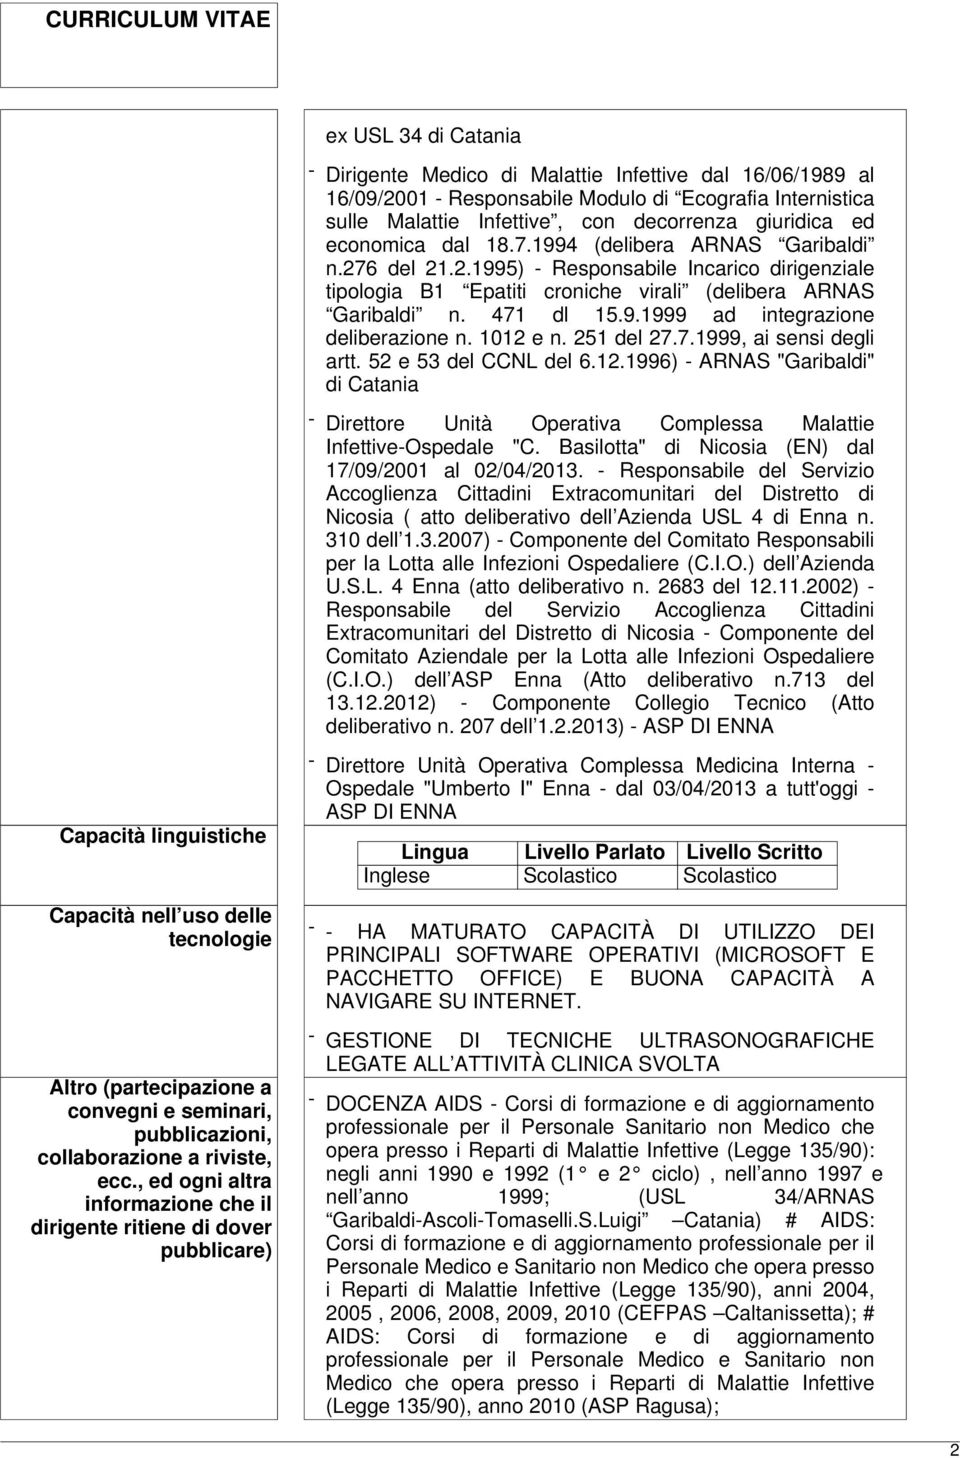 1012 e n. 251 del 27.7.1999, ai sensi degli artt. 52 e 53 del CCNL del 6.12.1996) - ARNAS "Garibaldi" di Catania - Direttore Unità Operativa Complessa Malattie Infettive-Ospedale "C.